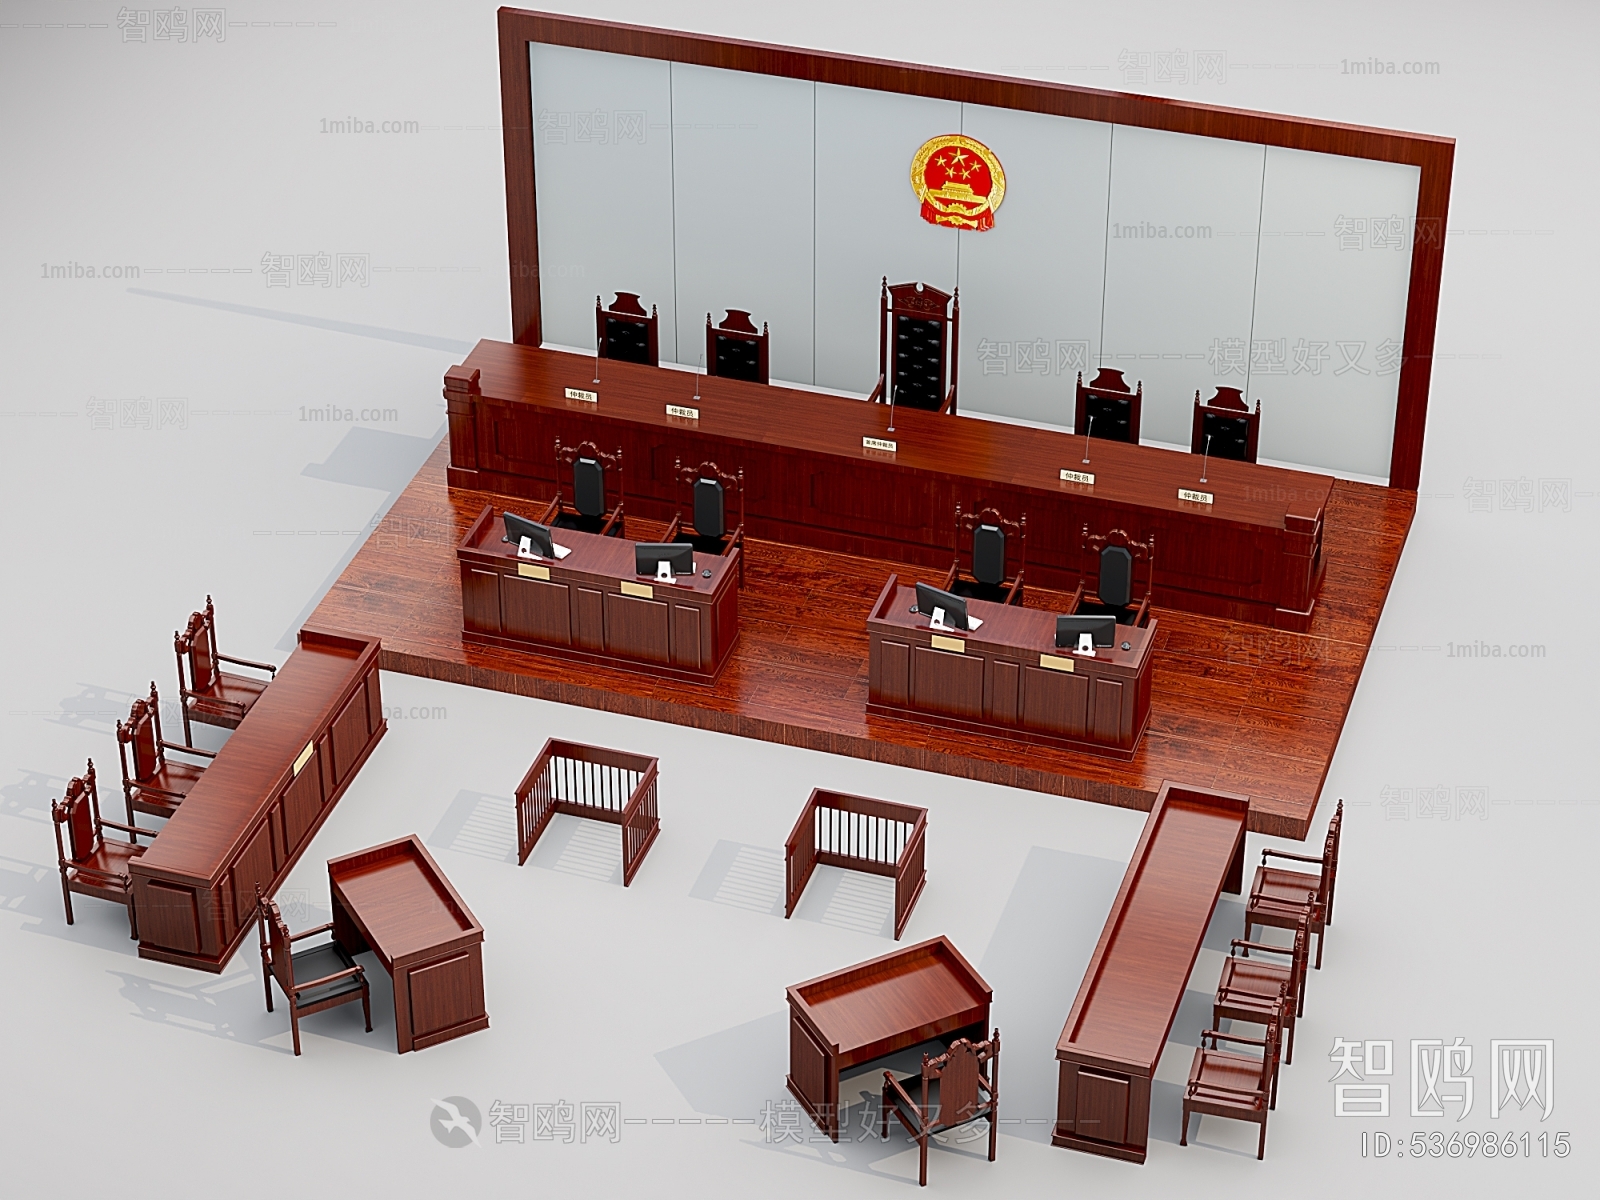 中式红木法庭审判厅桌椅组合